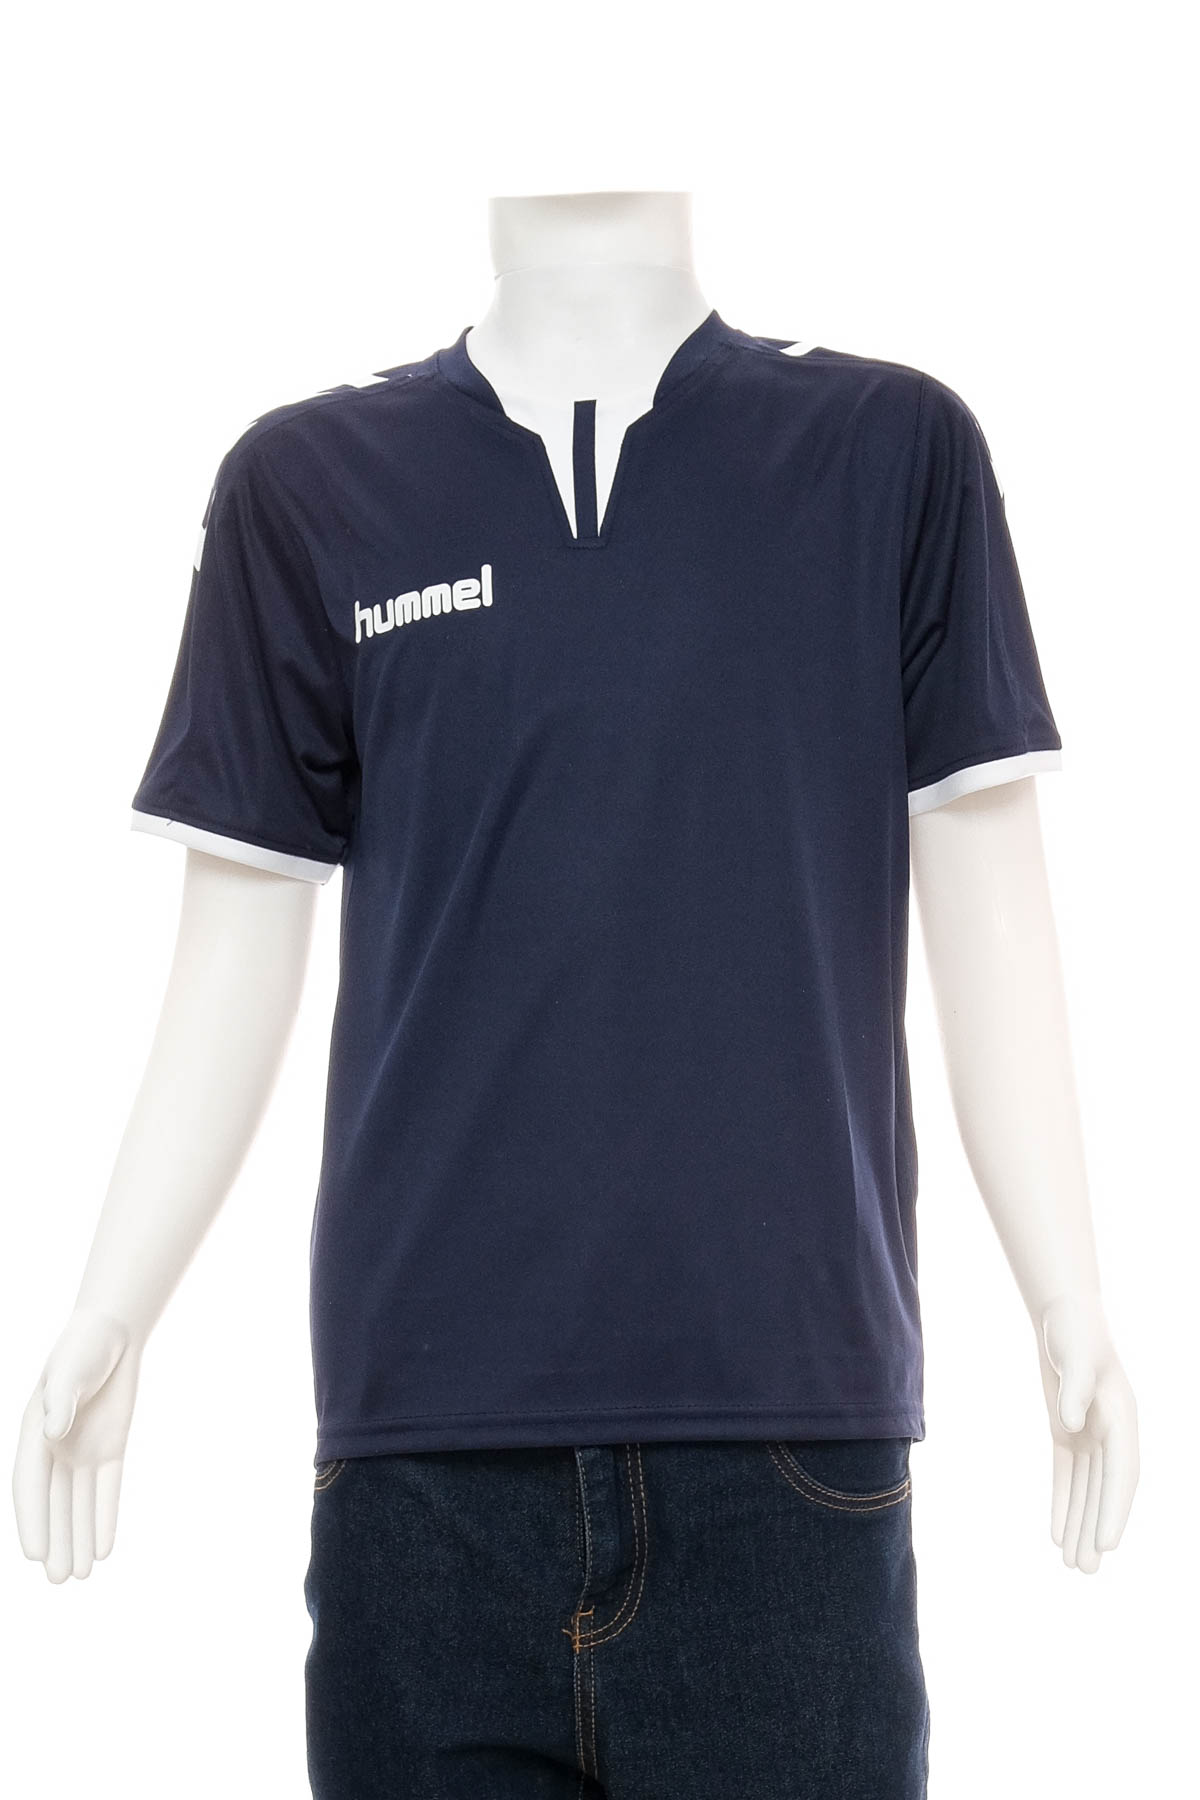 Тениска за момче - Hummel - 0